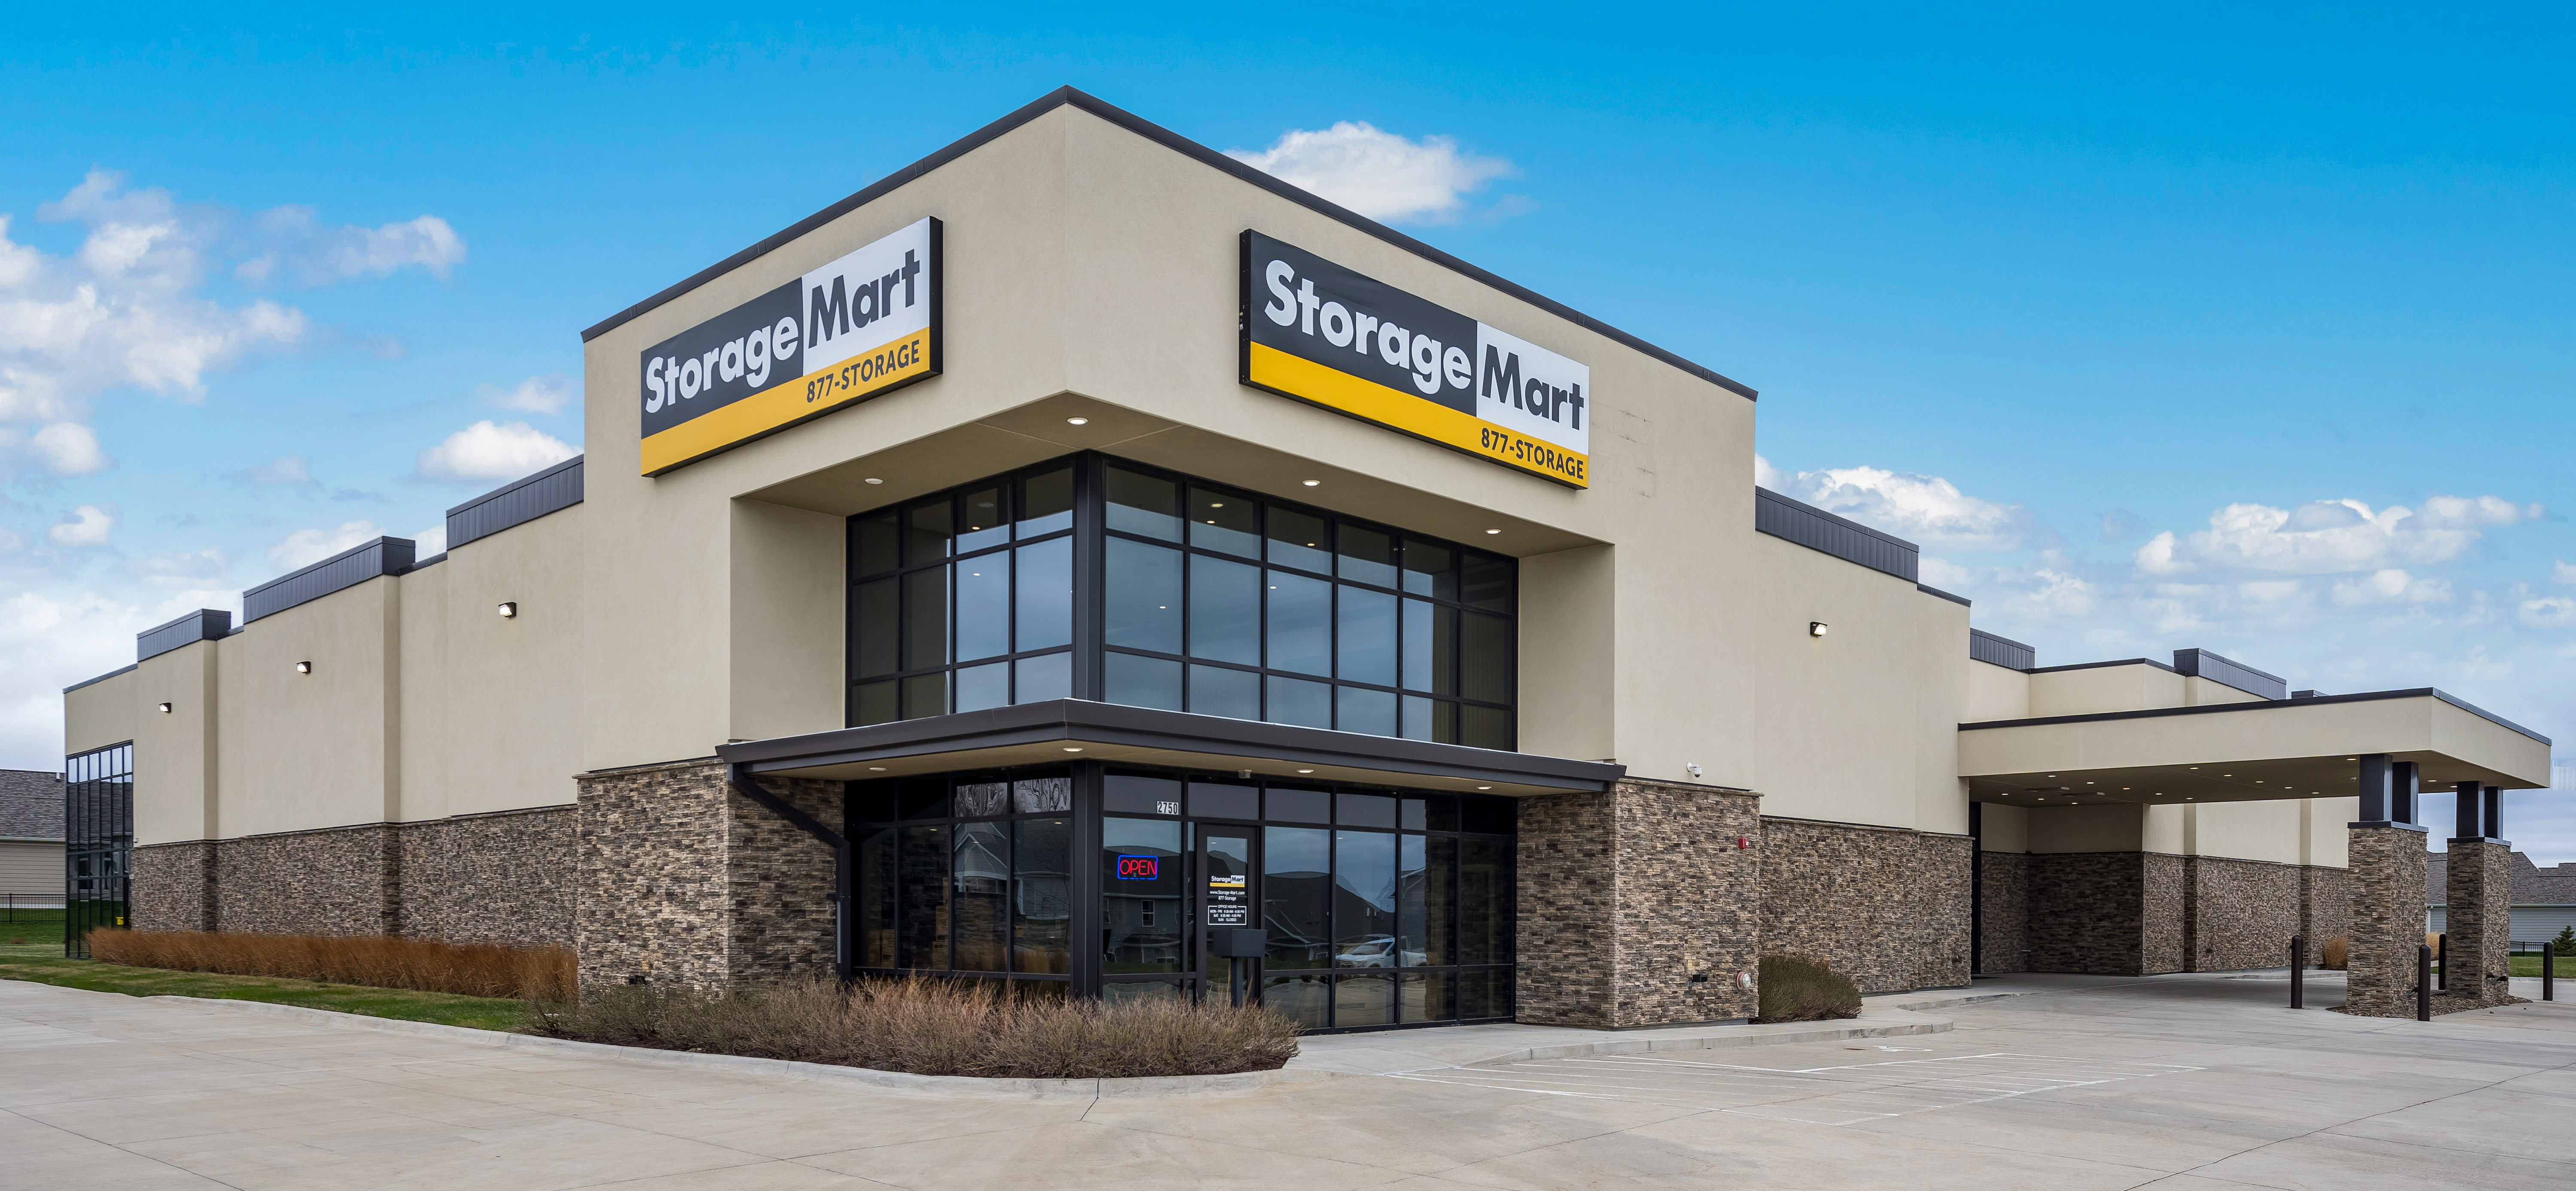 StorageMart Franchise Property